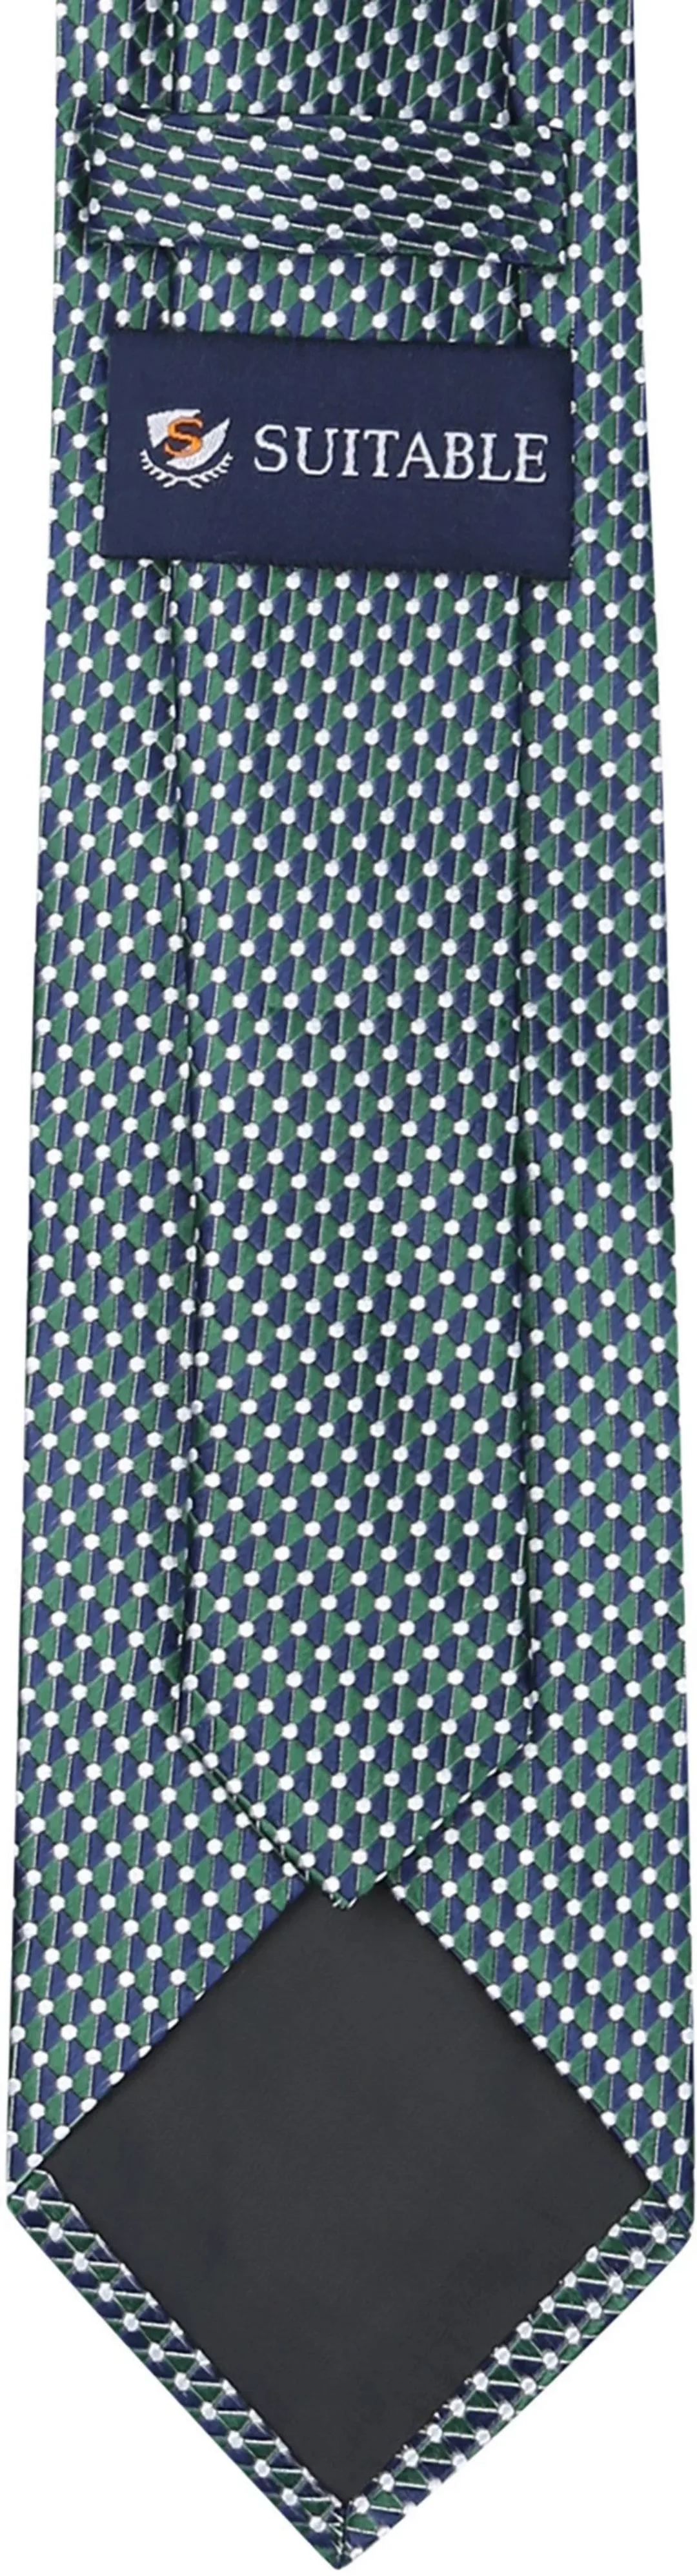 Suitable Krawatte Seide Druck Dots Dunkelgrün - günstig online kaufen